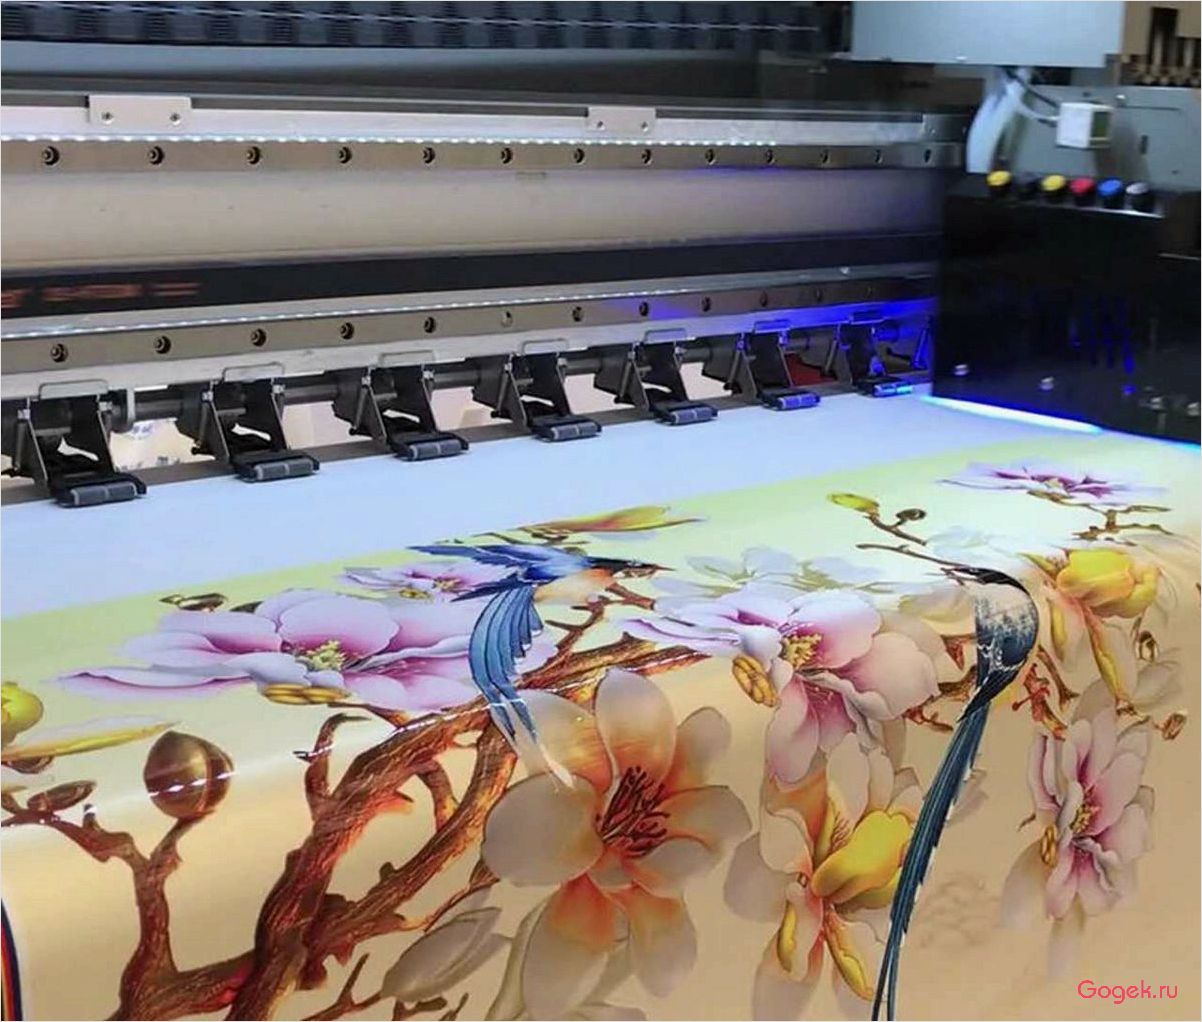 Печать на ткани: технологии и возможности